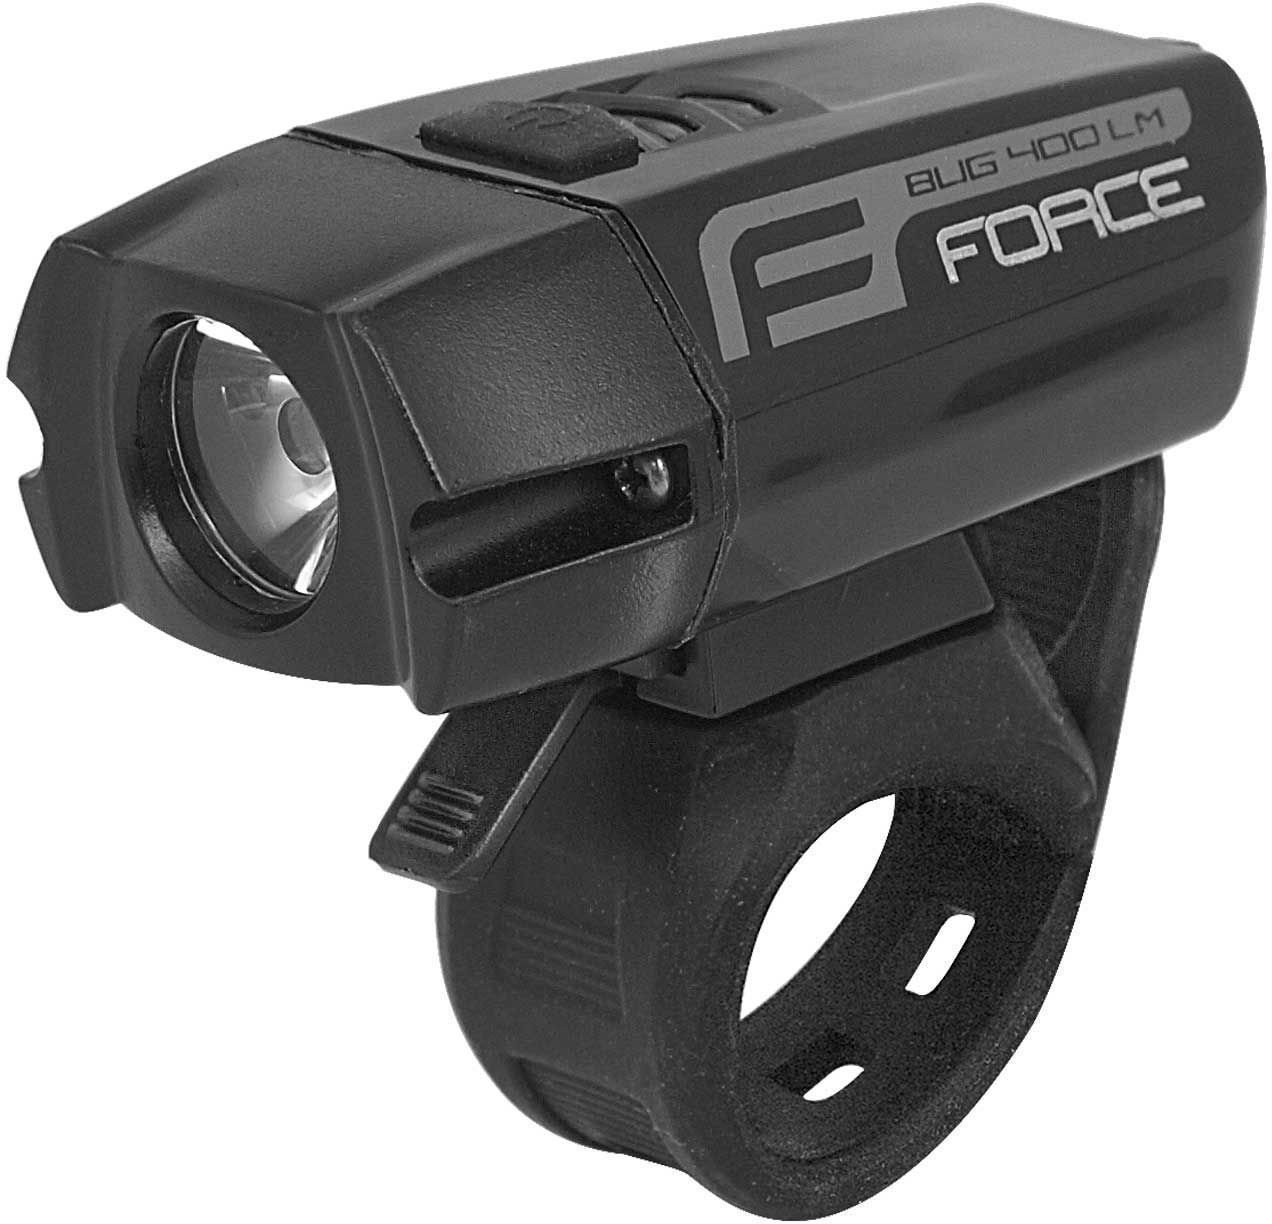 Vorderlicht Force Bug-400 USB 400 lm Black Vorderlicht